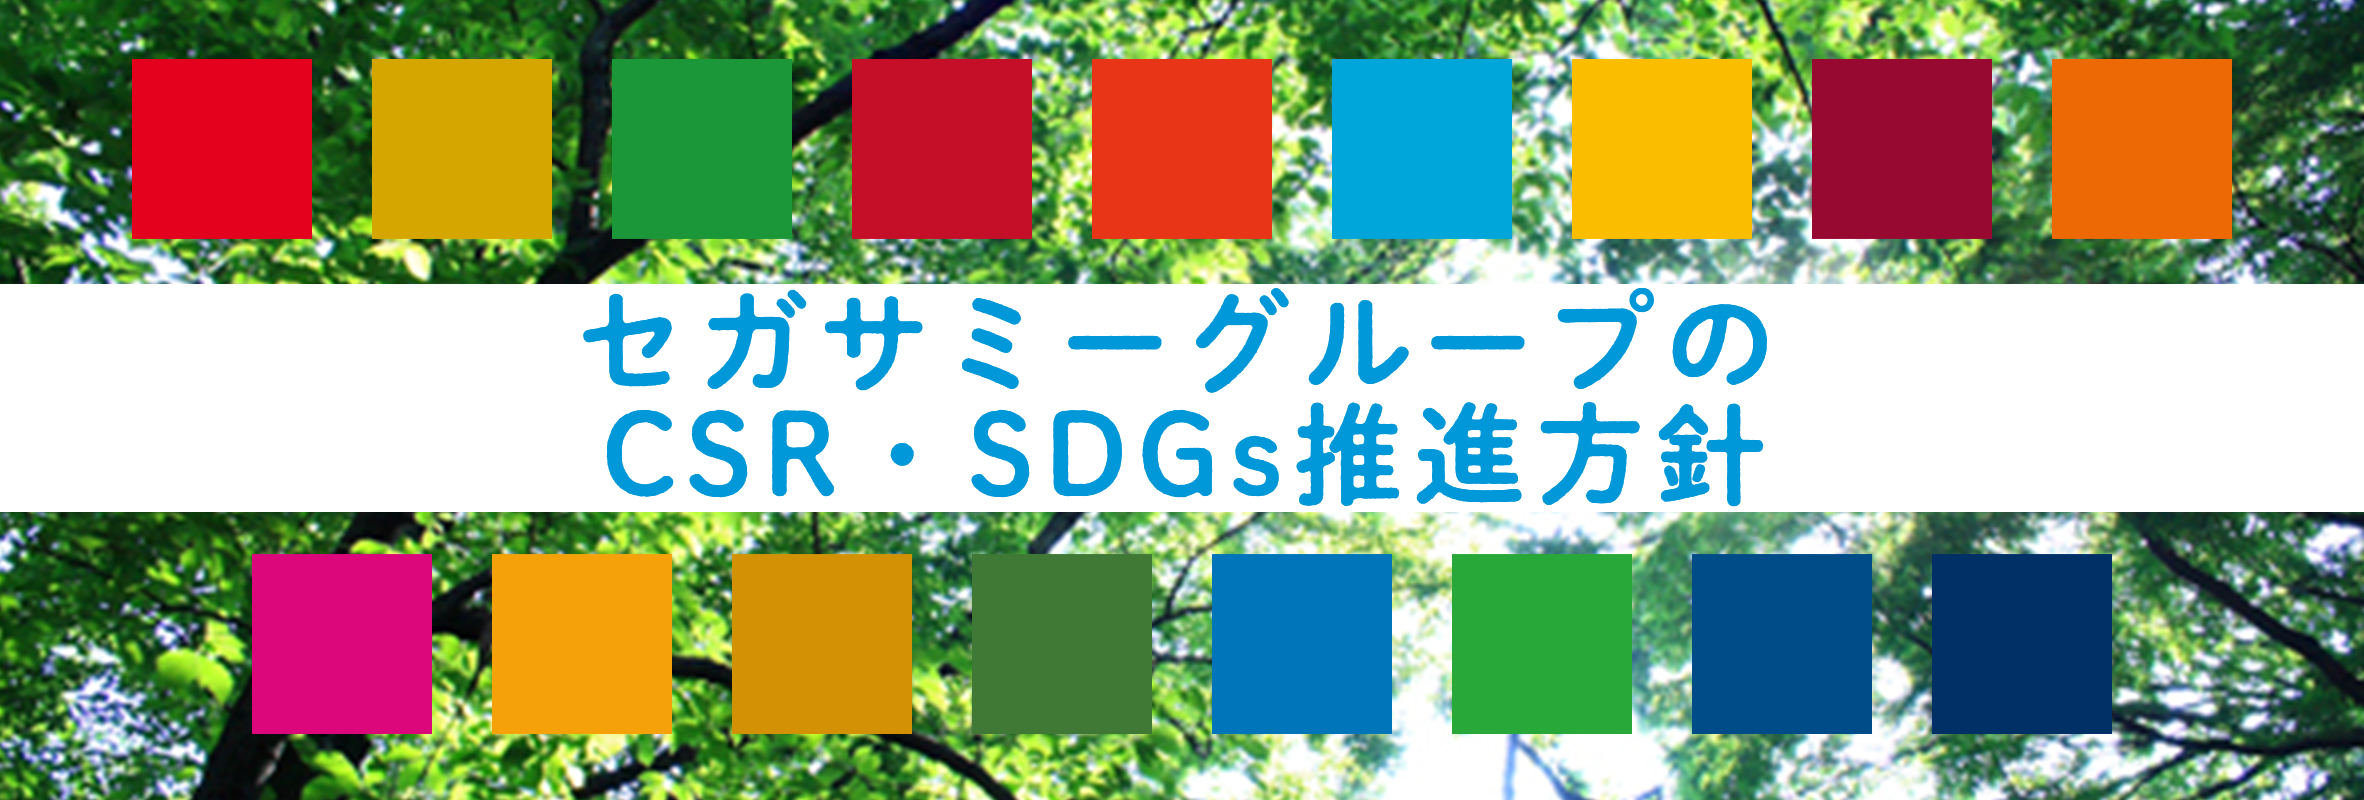 セガサミーグループのCSR・SDGs推進方針